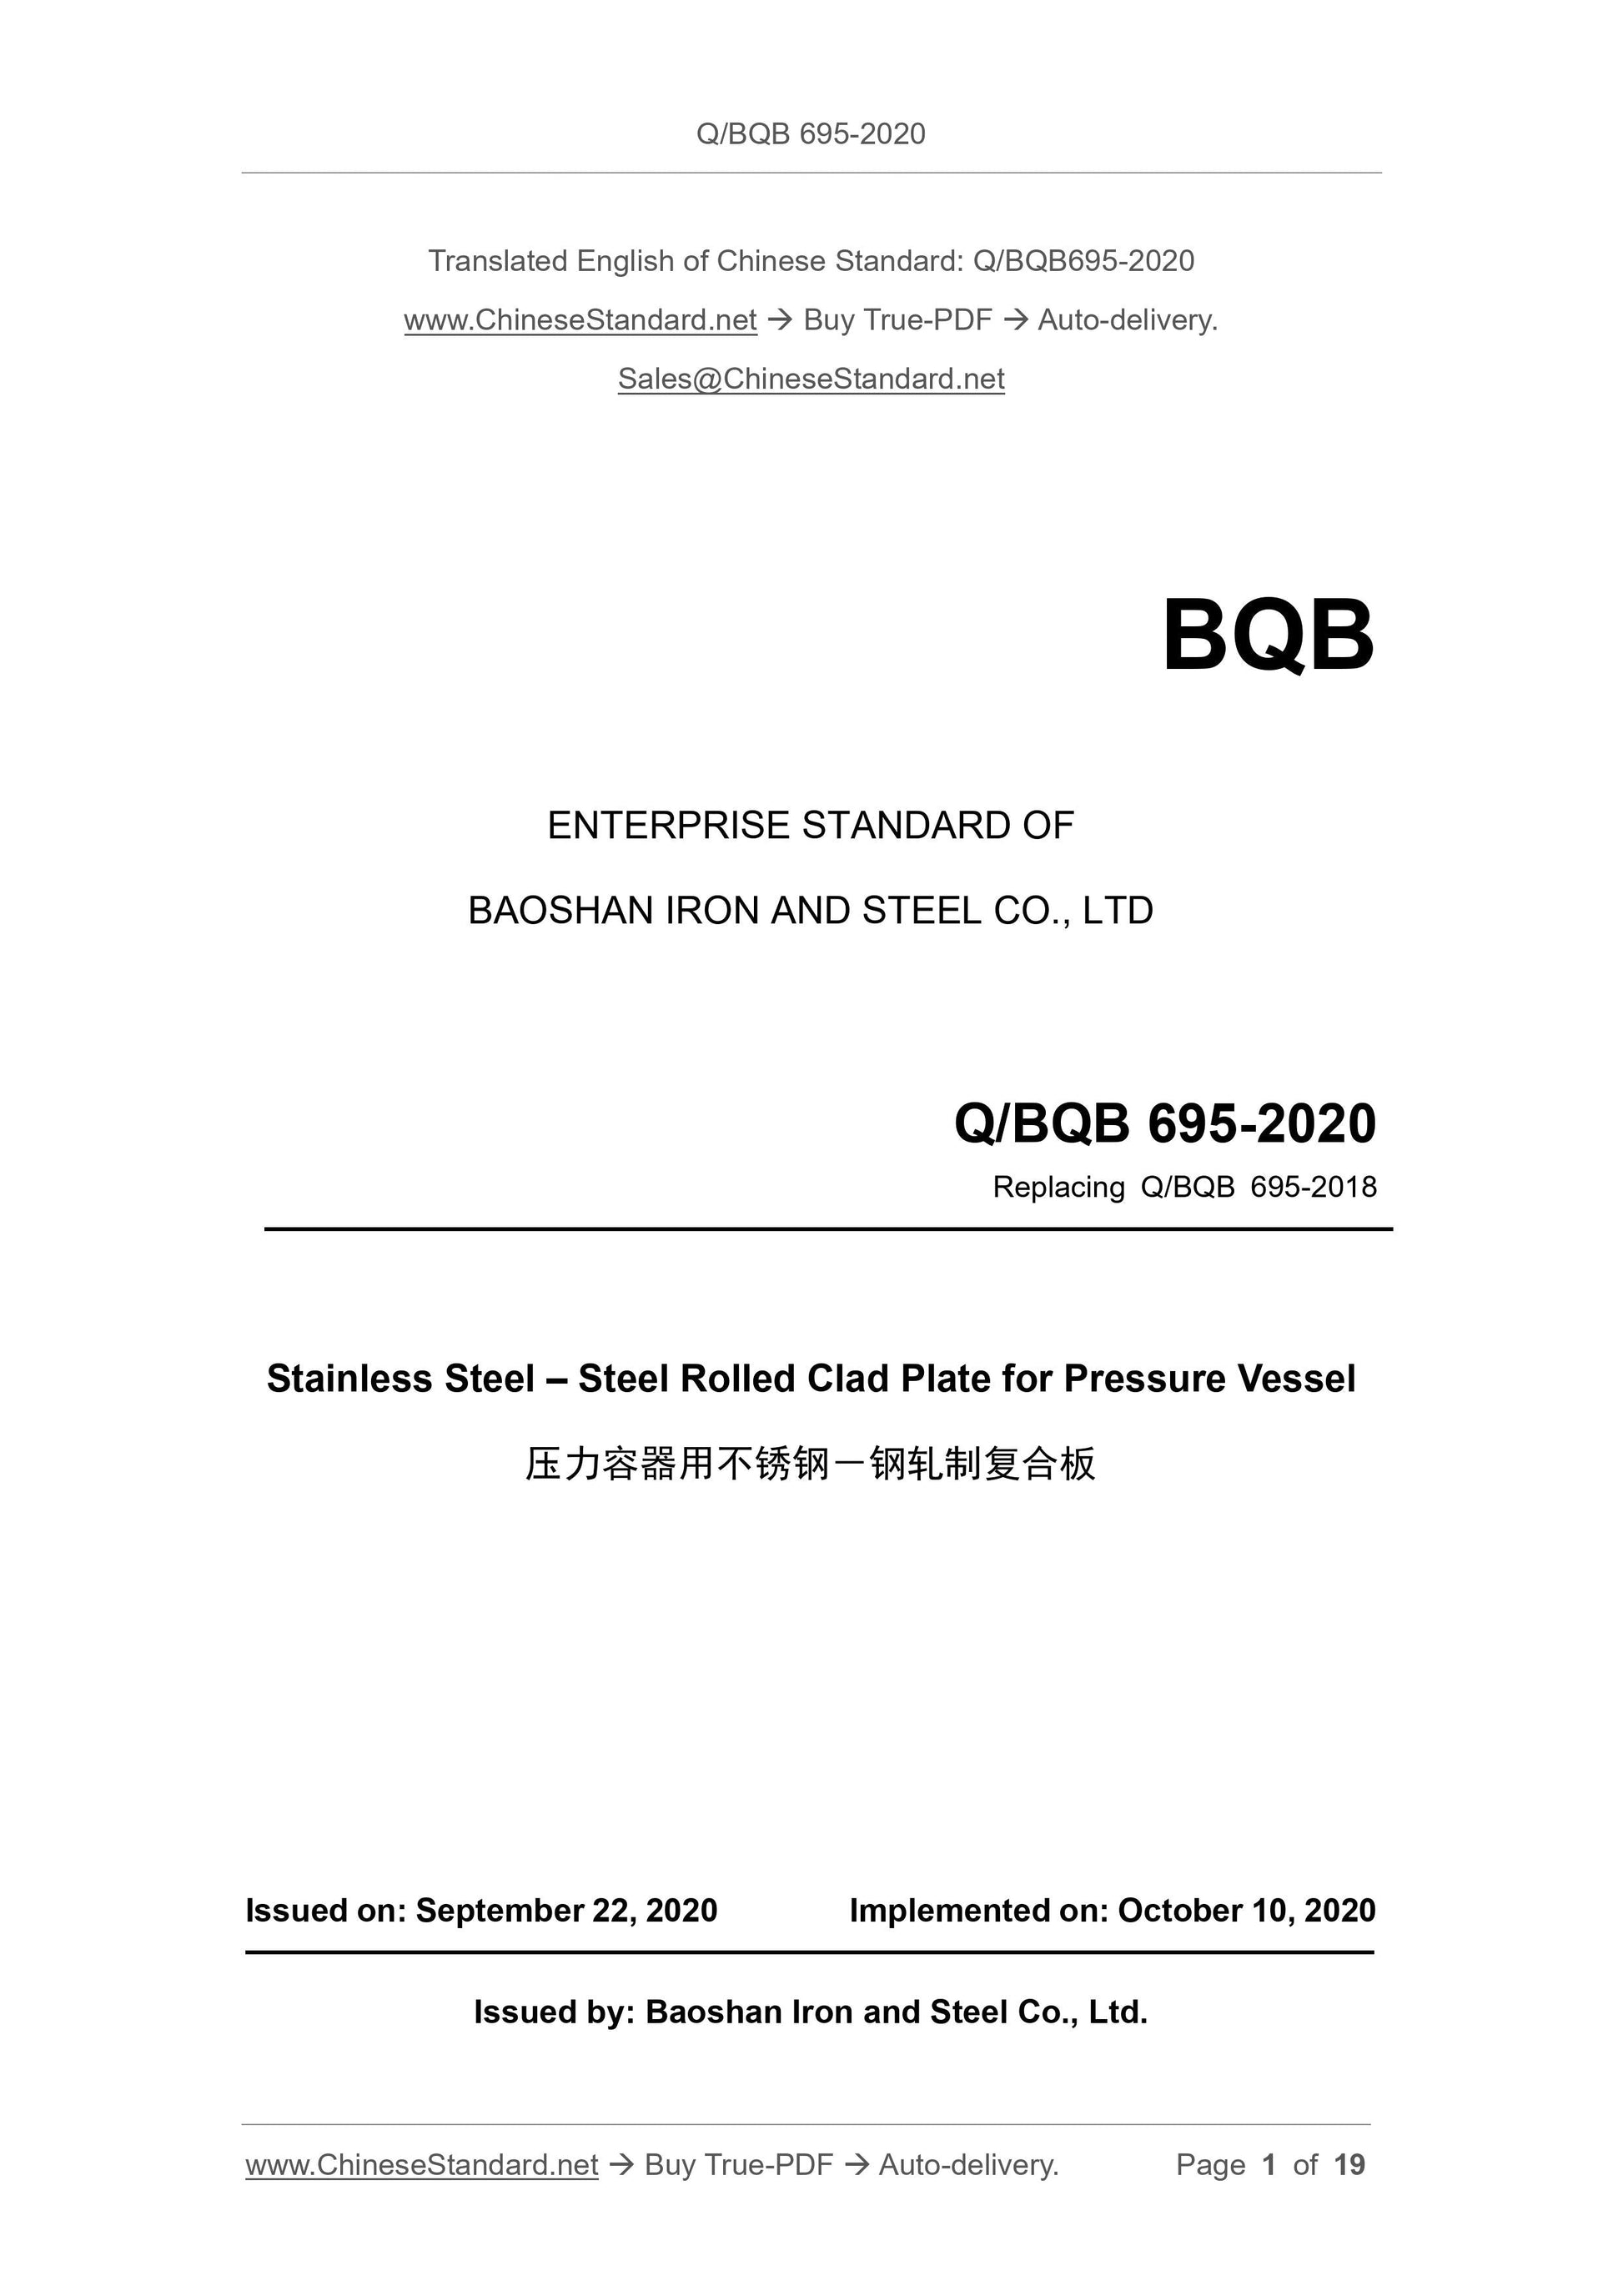 Q/BQB 695-2020 Page 1